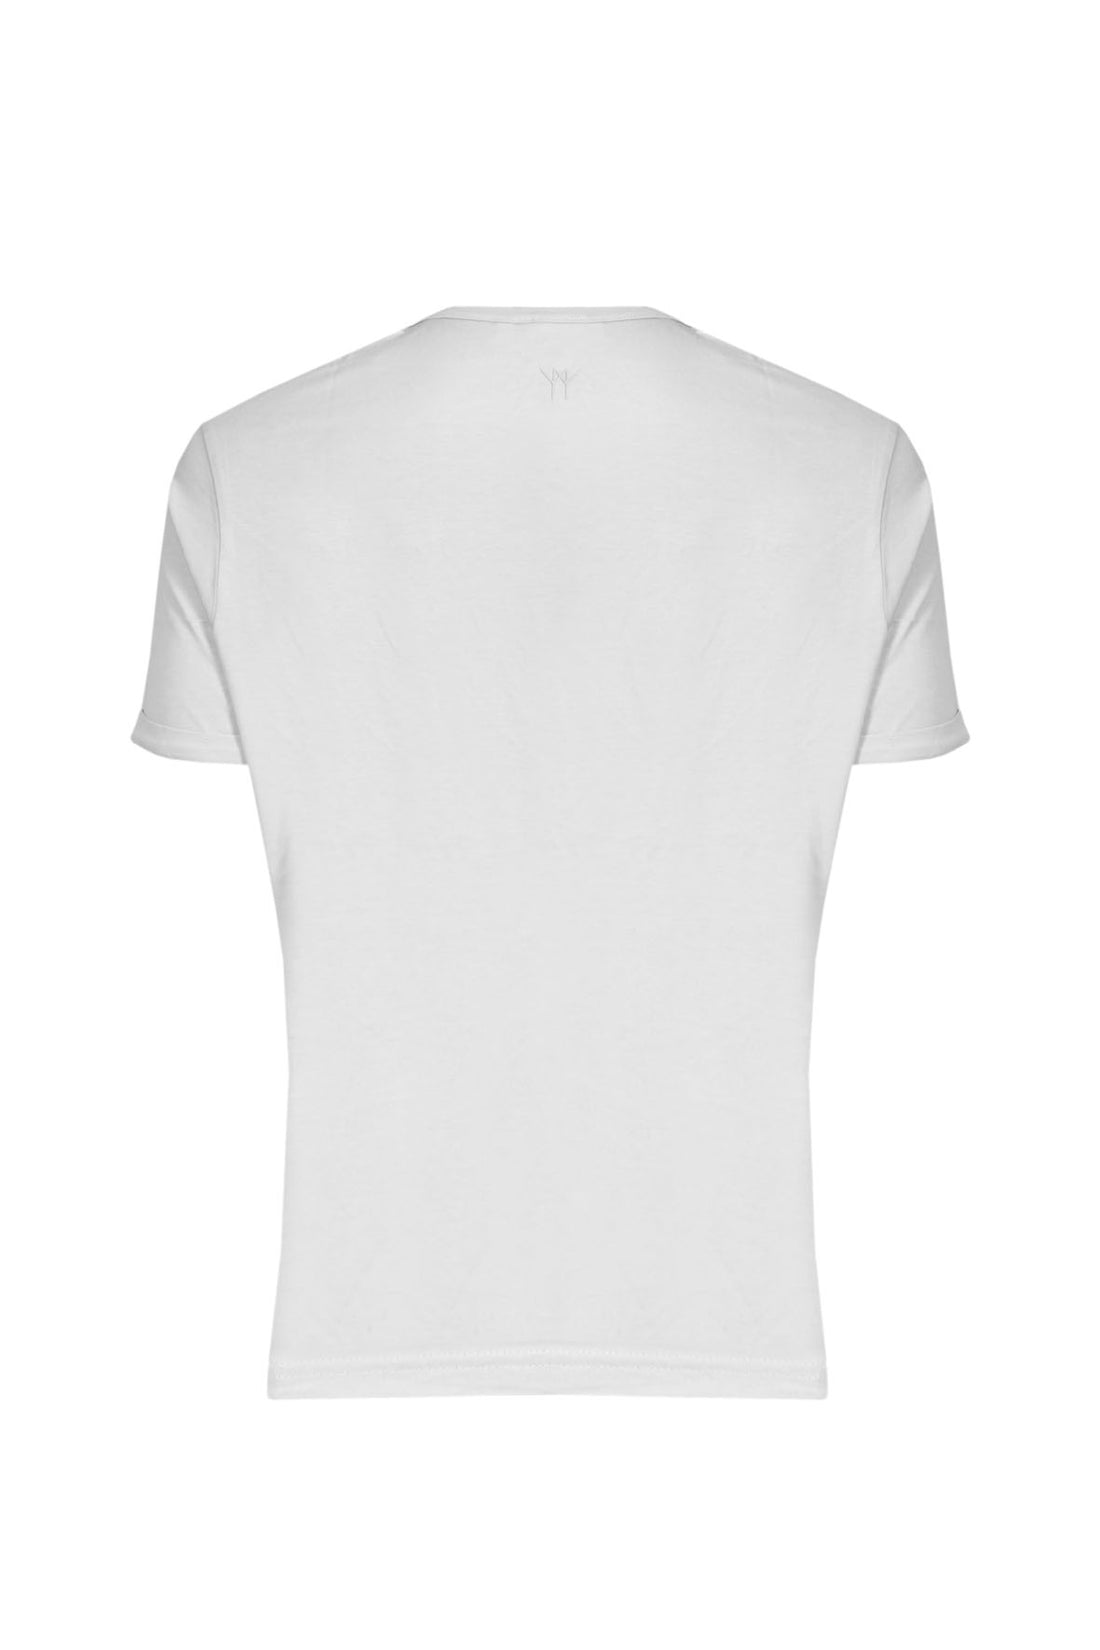 T-Shirt Mezza Manica Collo a Barca - Bianco